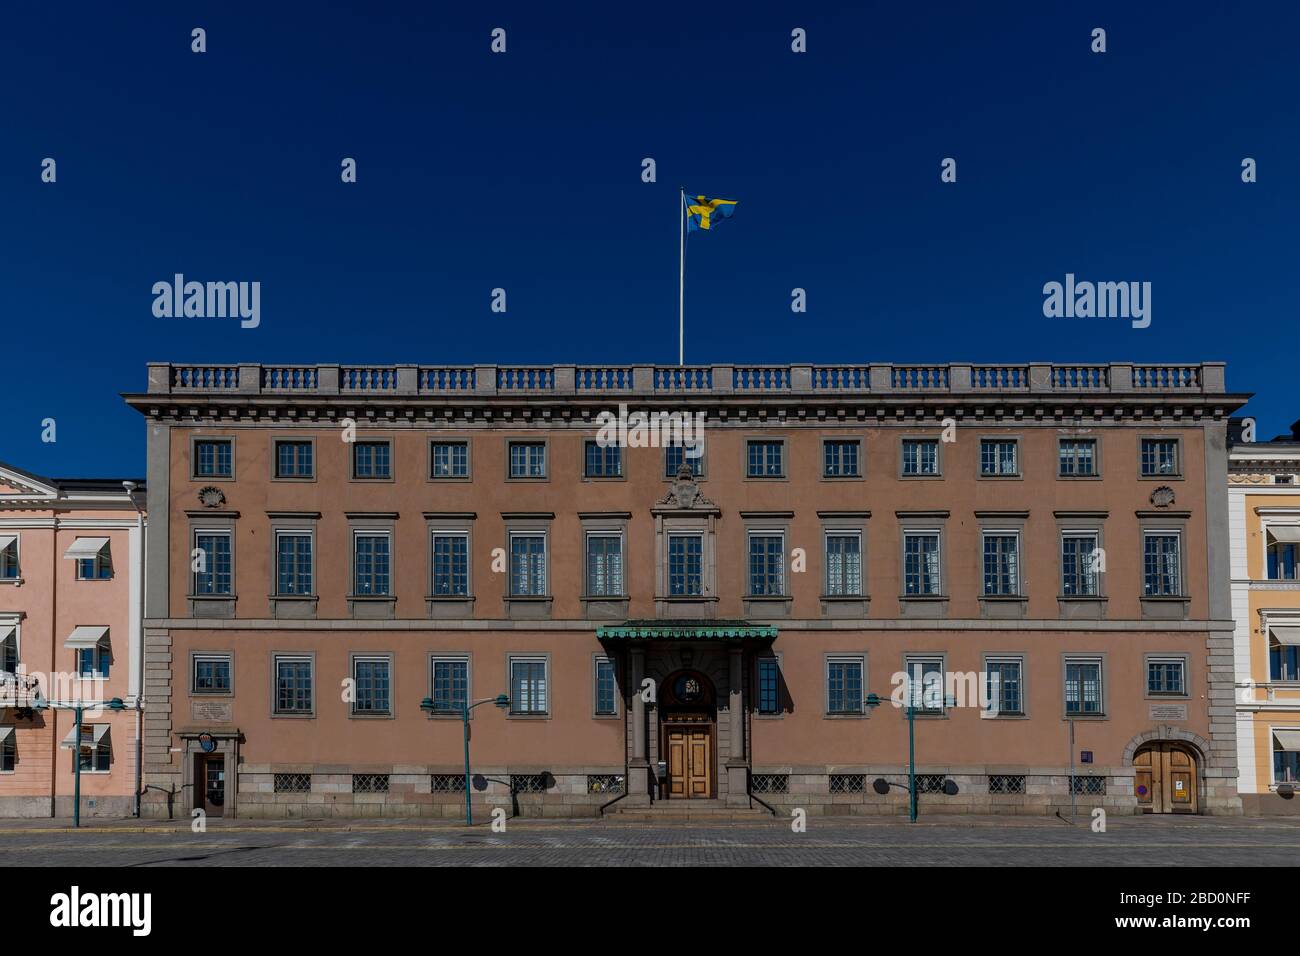 Die schwedische Botschaft in Helsinki befindet sich neben dem festpalast des präsidenten. Der Standort unterstreicht die gute Beziehung zwischen zwei Ländern. Stockfoto